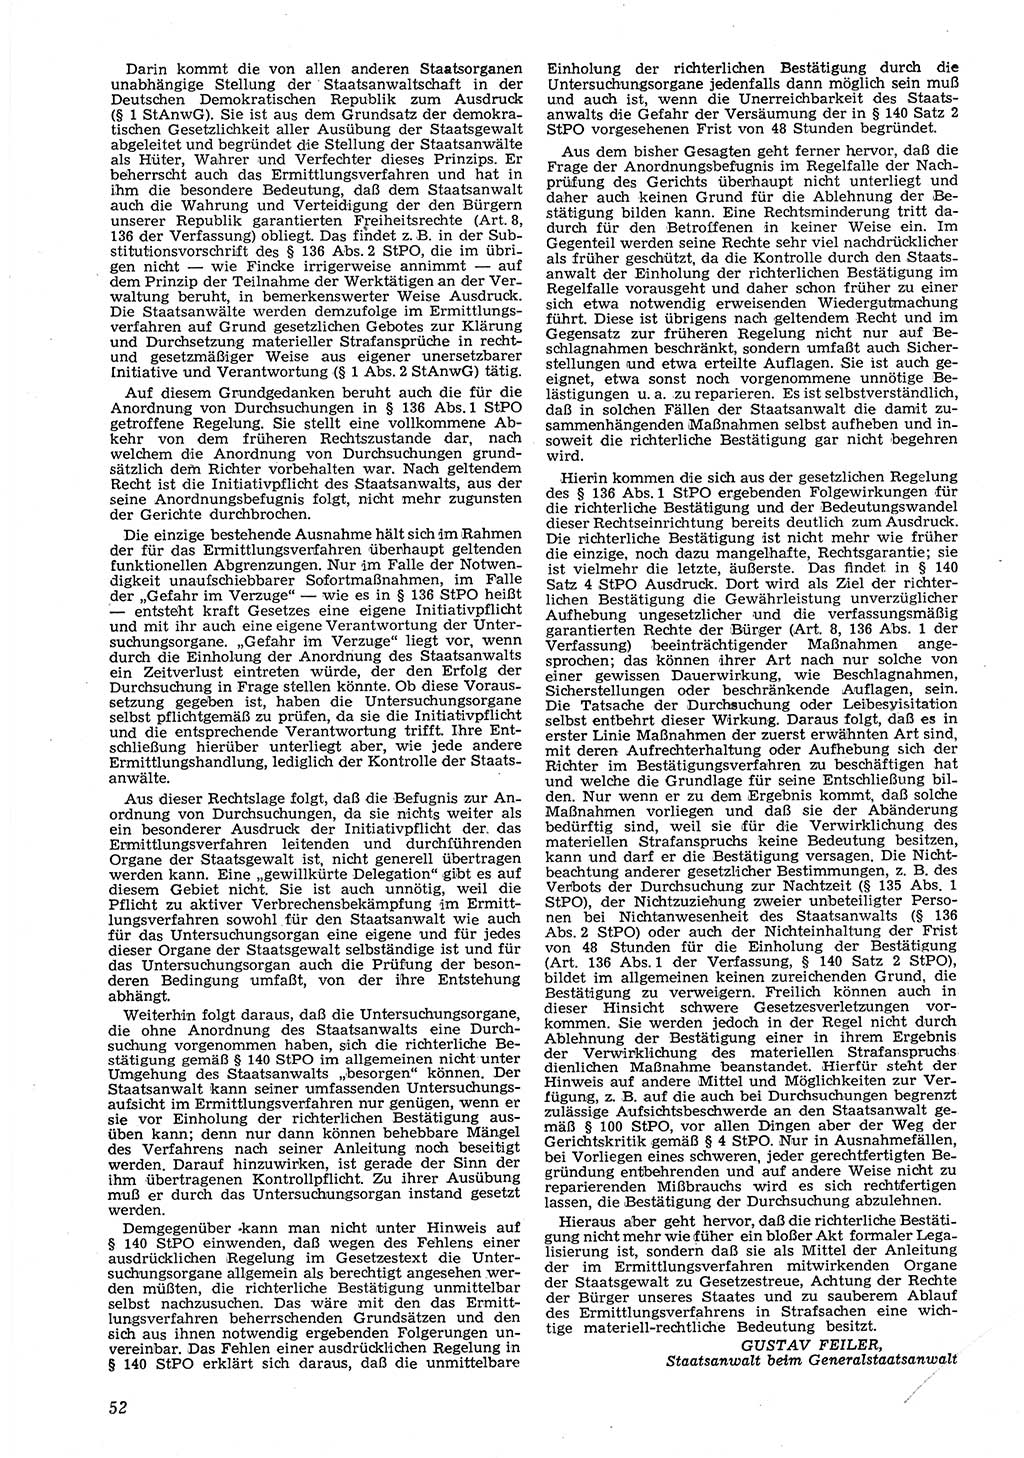 Neue Justiz (NJ), Zeitschrift für Recht und Rechtswissenschaft [Deutsche Demokratische Republik (DDR)], 8. Jahrgang 1954, Seite 52 (NJ DDR 1954, S. 52)